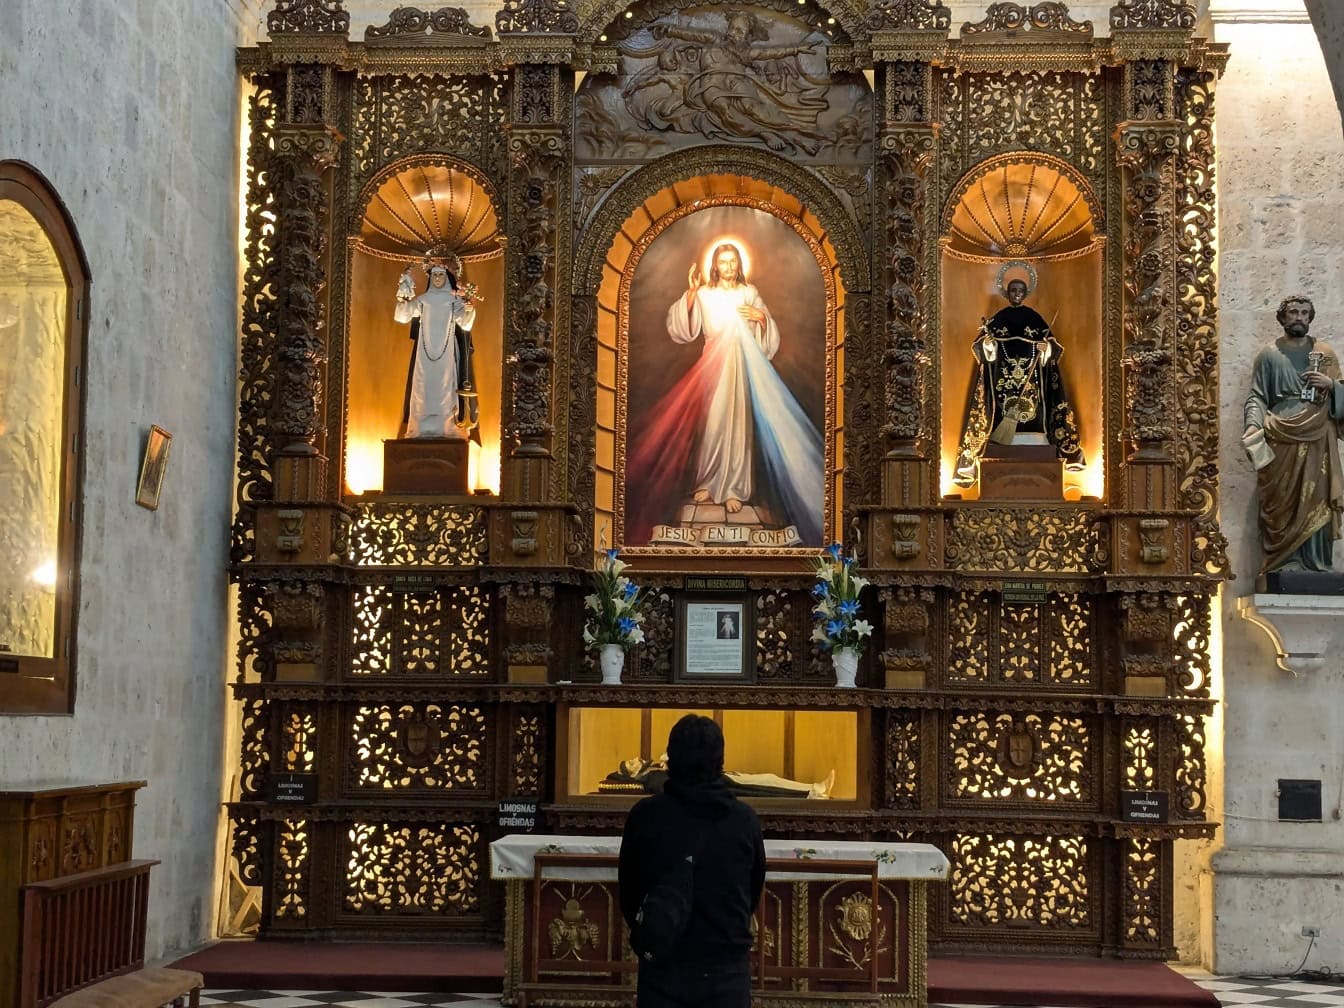 Henkilö, joka seisoo ja rukoilee koristeellisen alttarin edessä, jossa on Jeesuksen Kristuksen ikoni katolisessa kirkossa